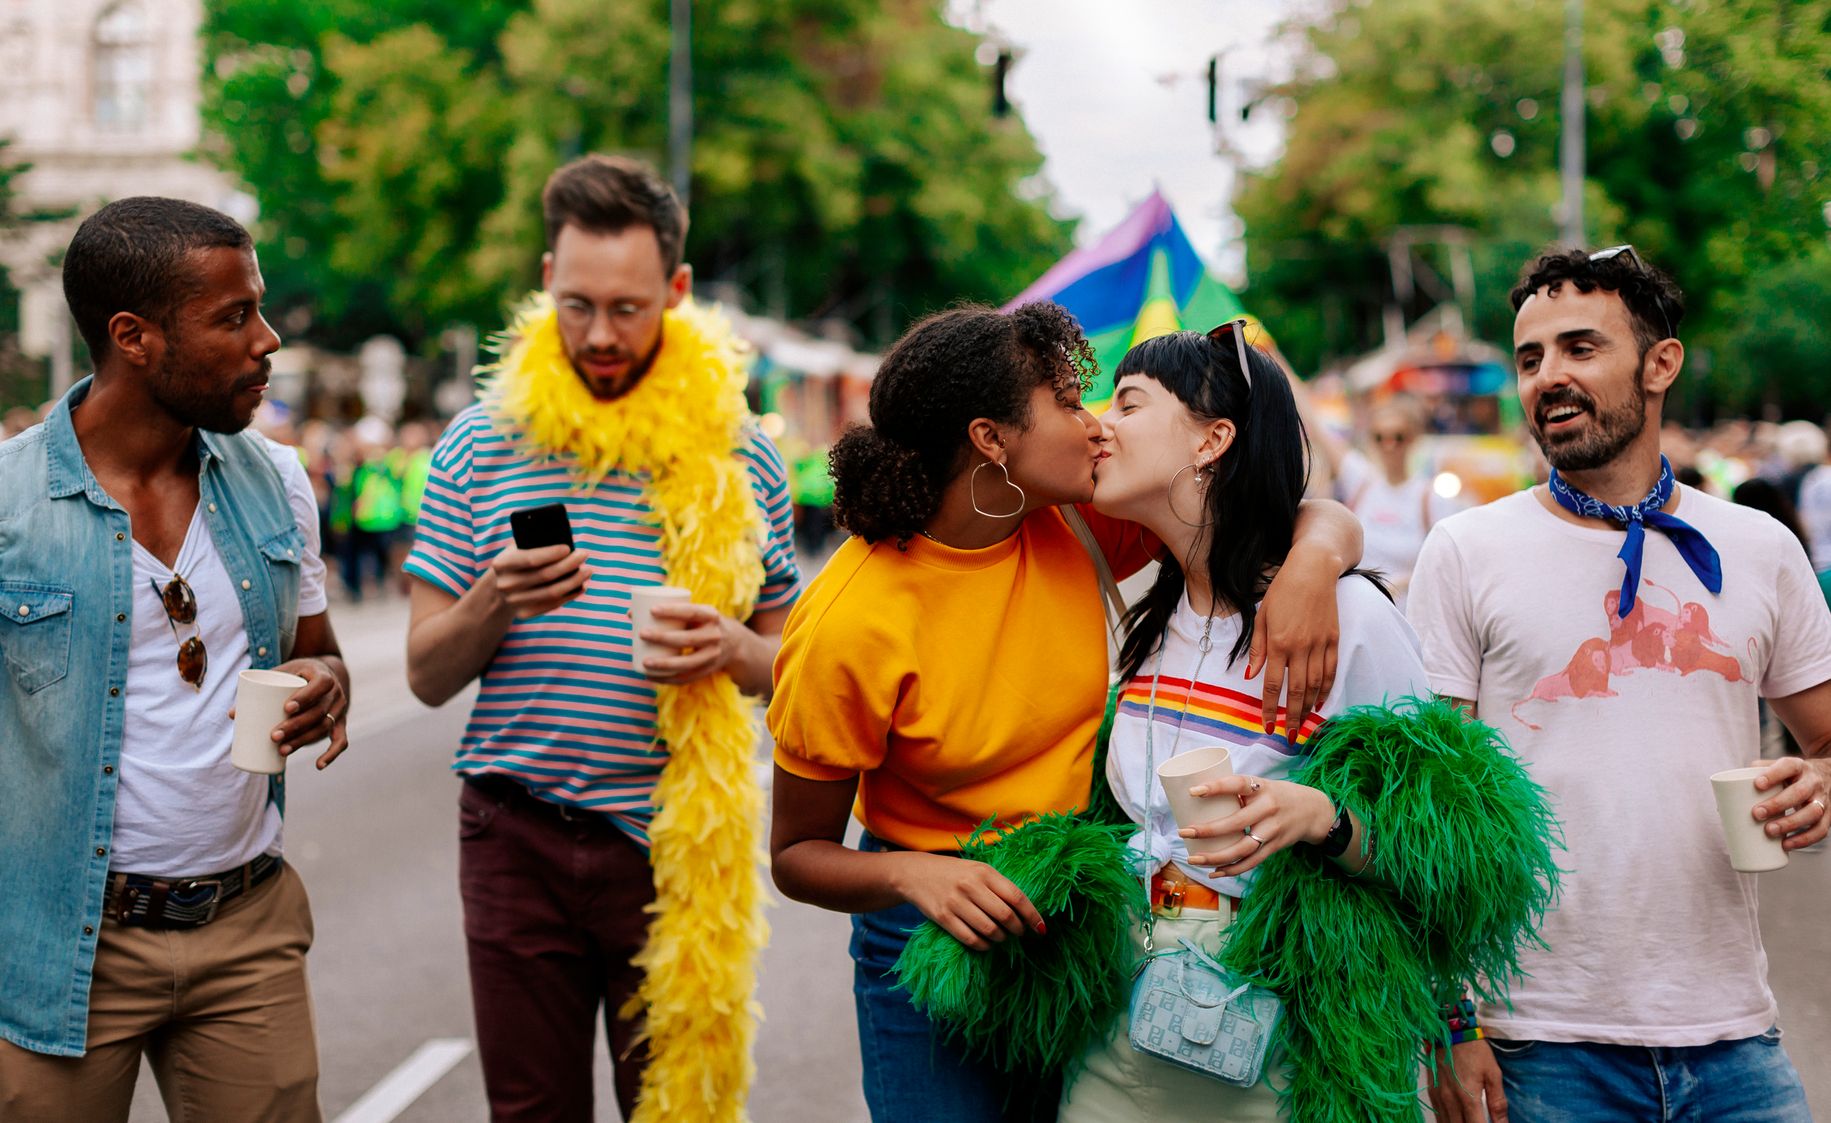 EuroPride heads to Vienna in 2019